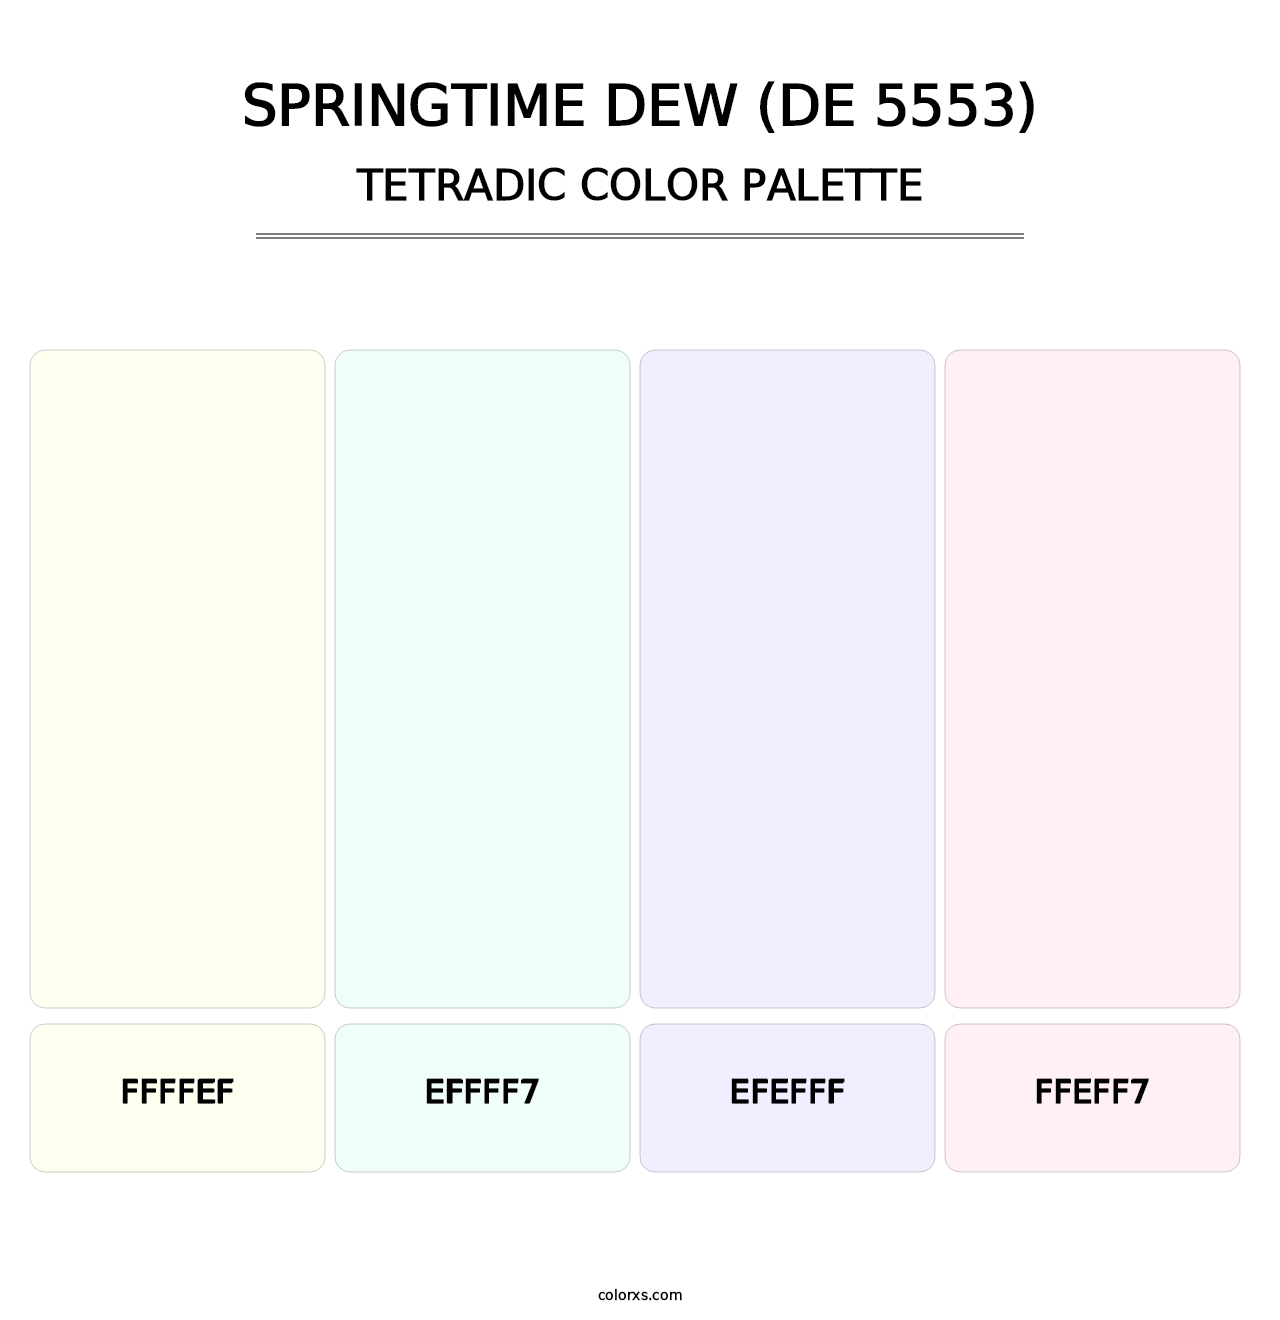 Springtime Dew (DE 5553) - Tetradic Color Palette